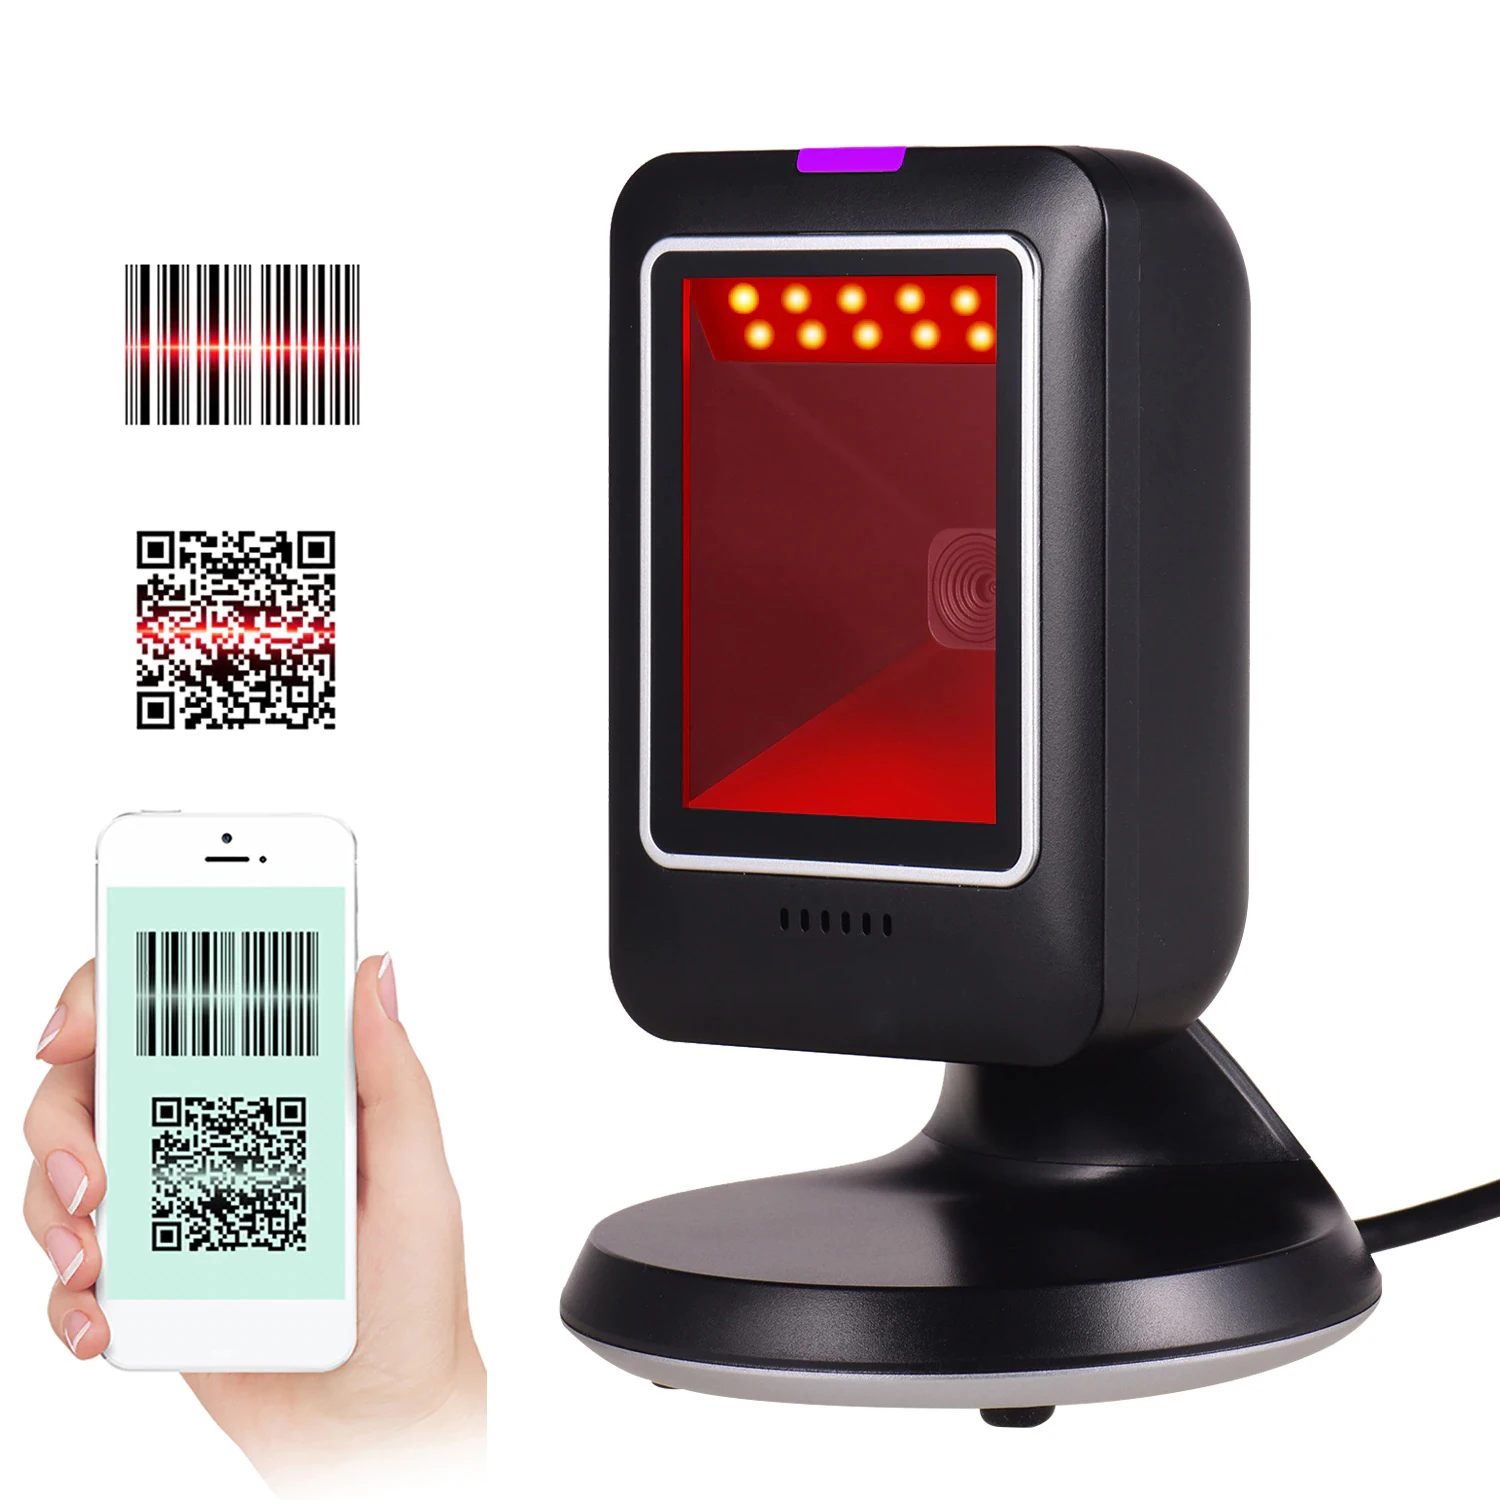 2D Scanner Omni scanner Barcode | 2mrk Sale Online